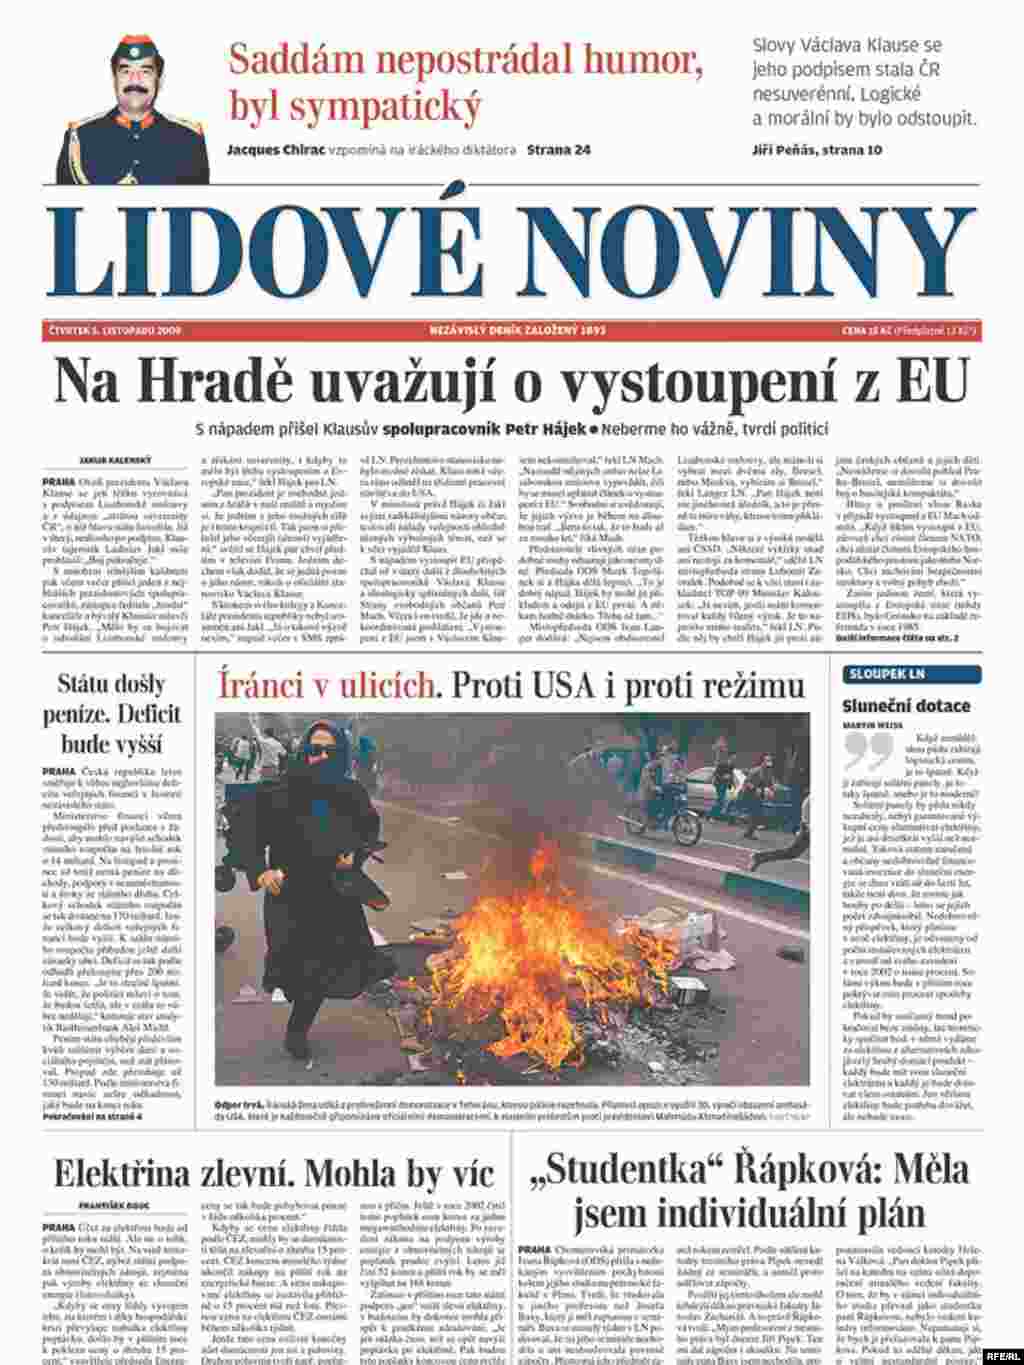 روزنامه لیدووه نوینی، چاپ جمهوری چک